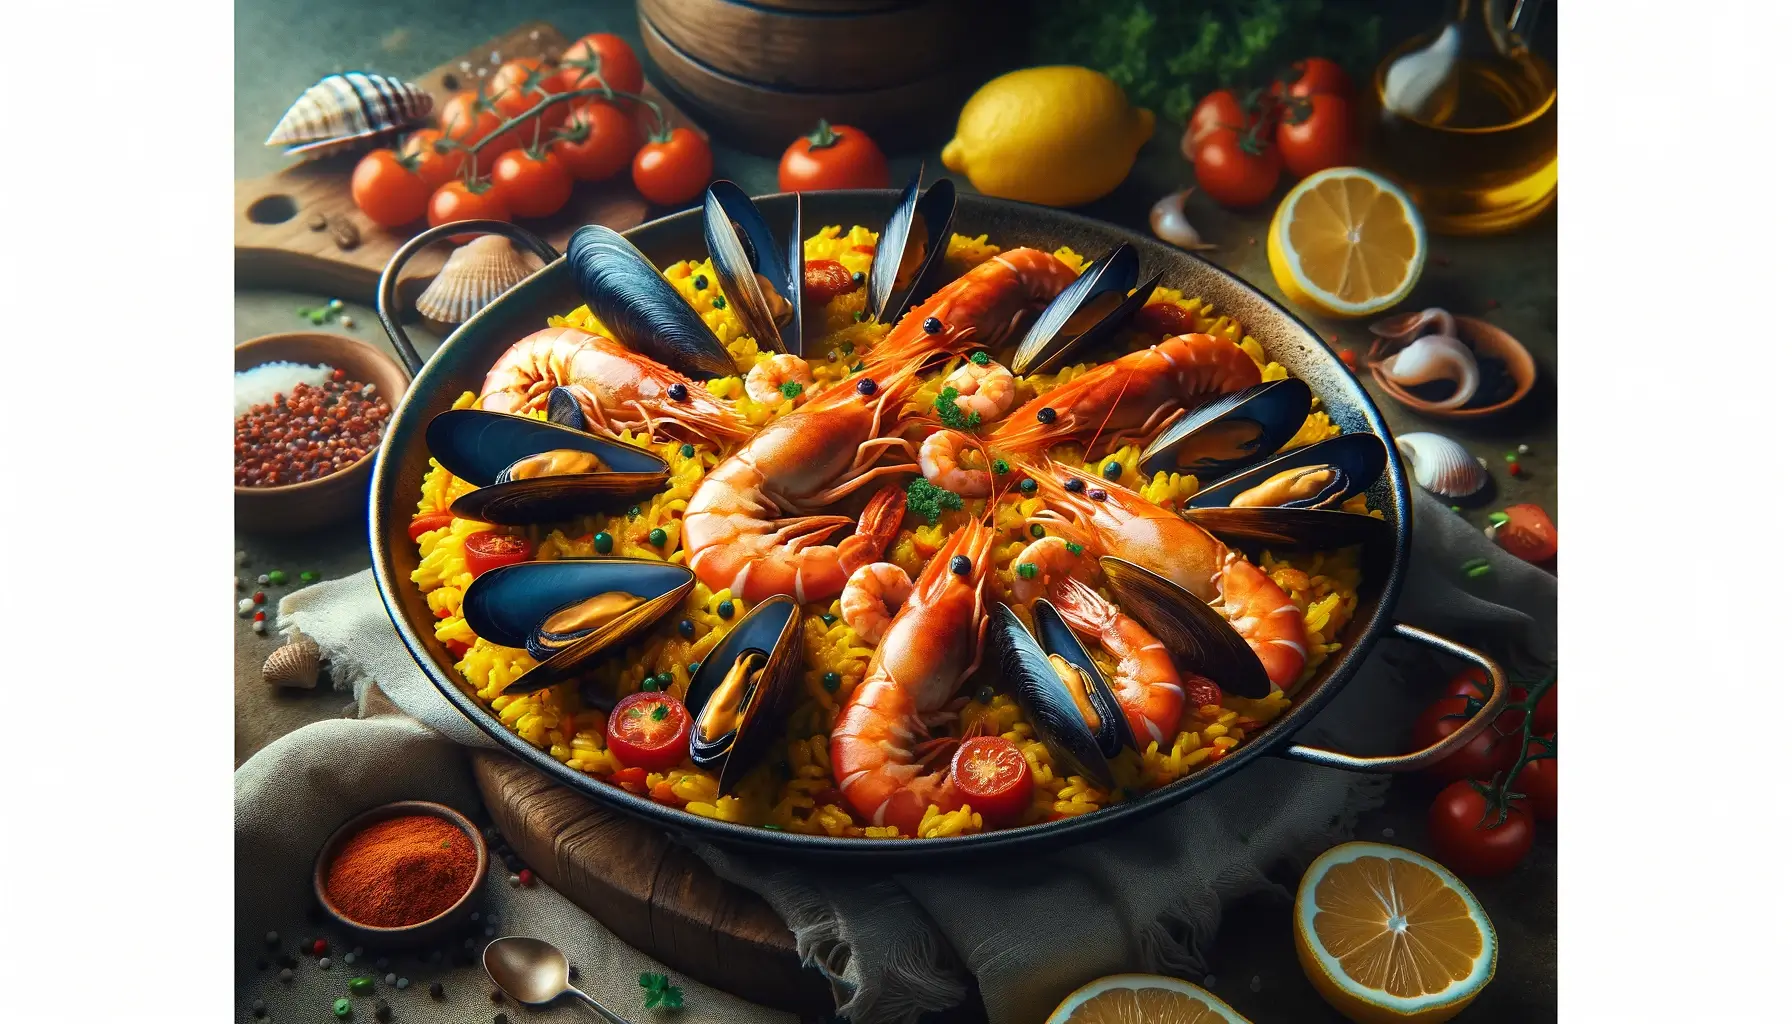 Испанская паэлья: история блюда, классические рецепты с морепродуктами и курицей, отзывы